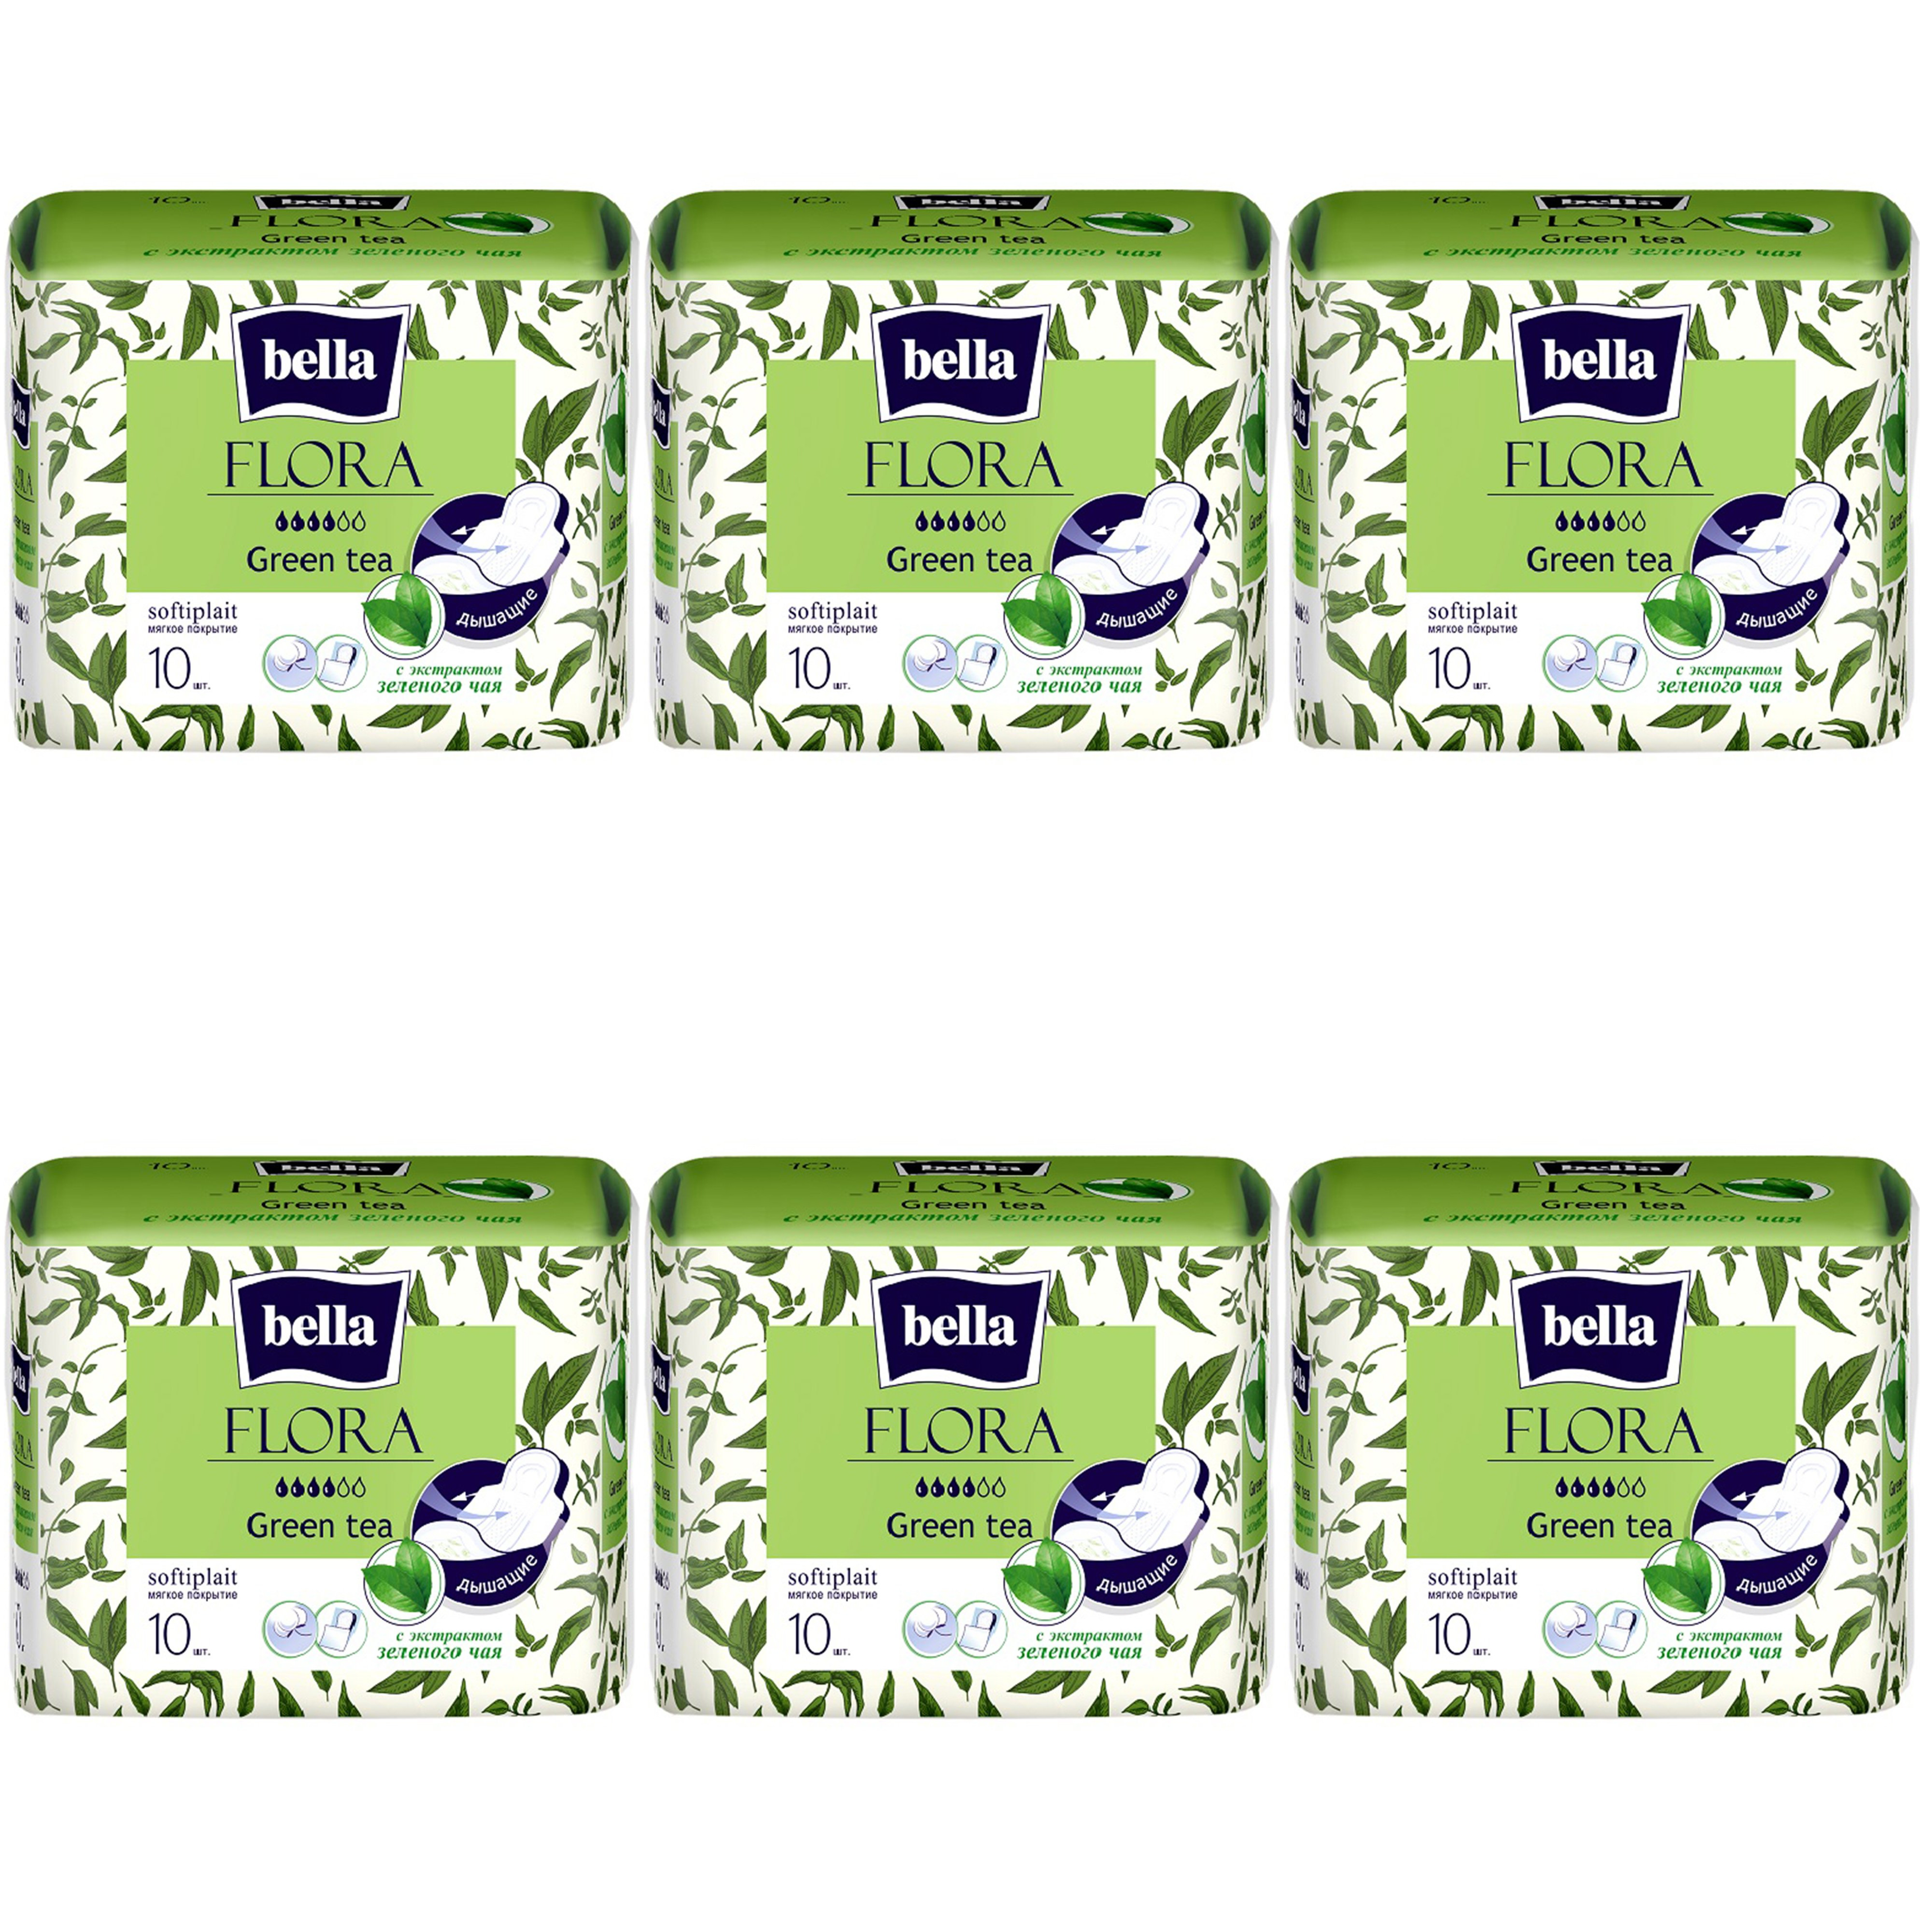 Прокладки Bella Flora Green tea, с экстрактом зеленого чая, 10шт. х 6уп. прокладки женские bella flora green tea с экстрактом зеленого чая 6 упаковок по 10 шт